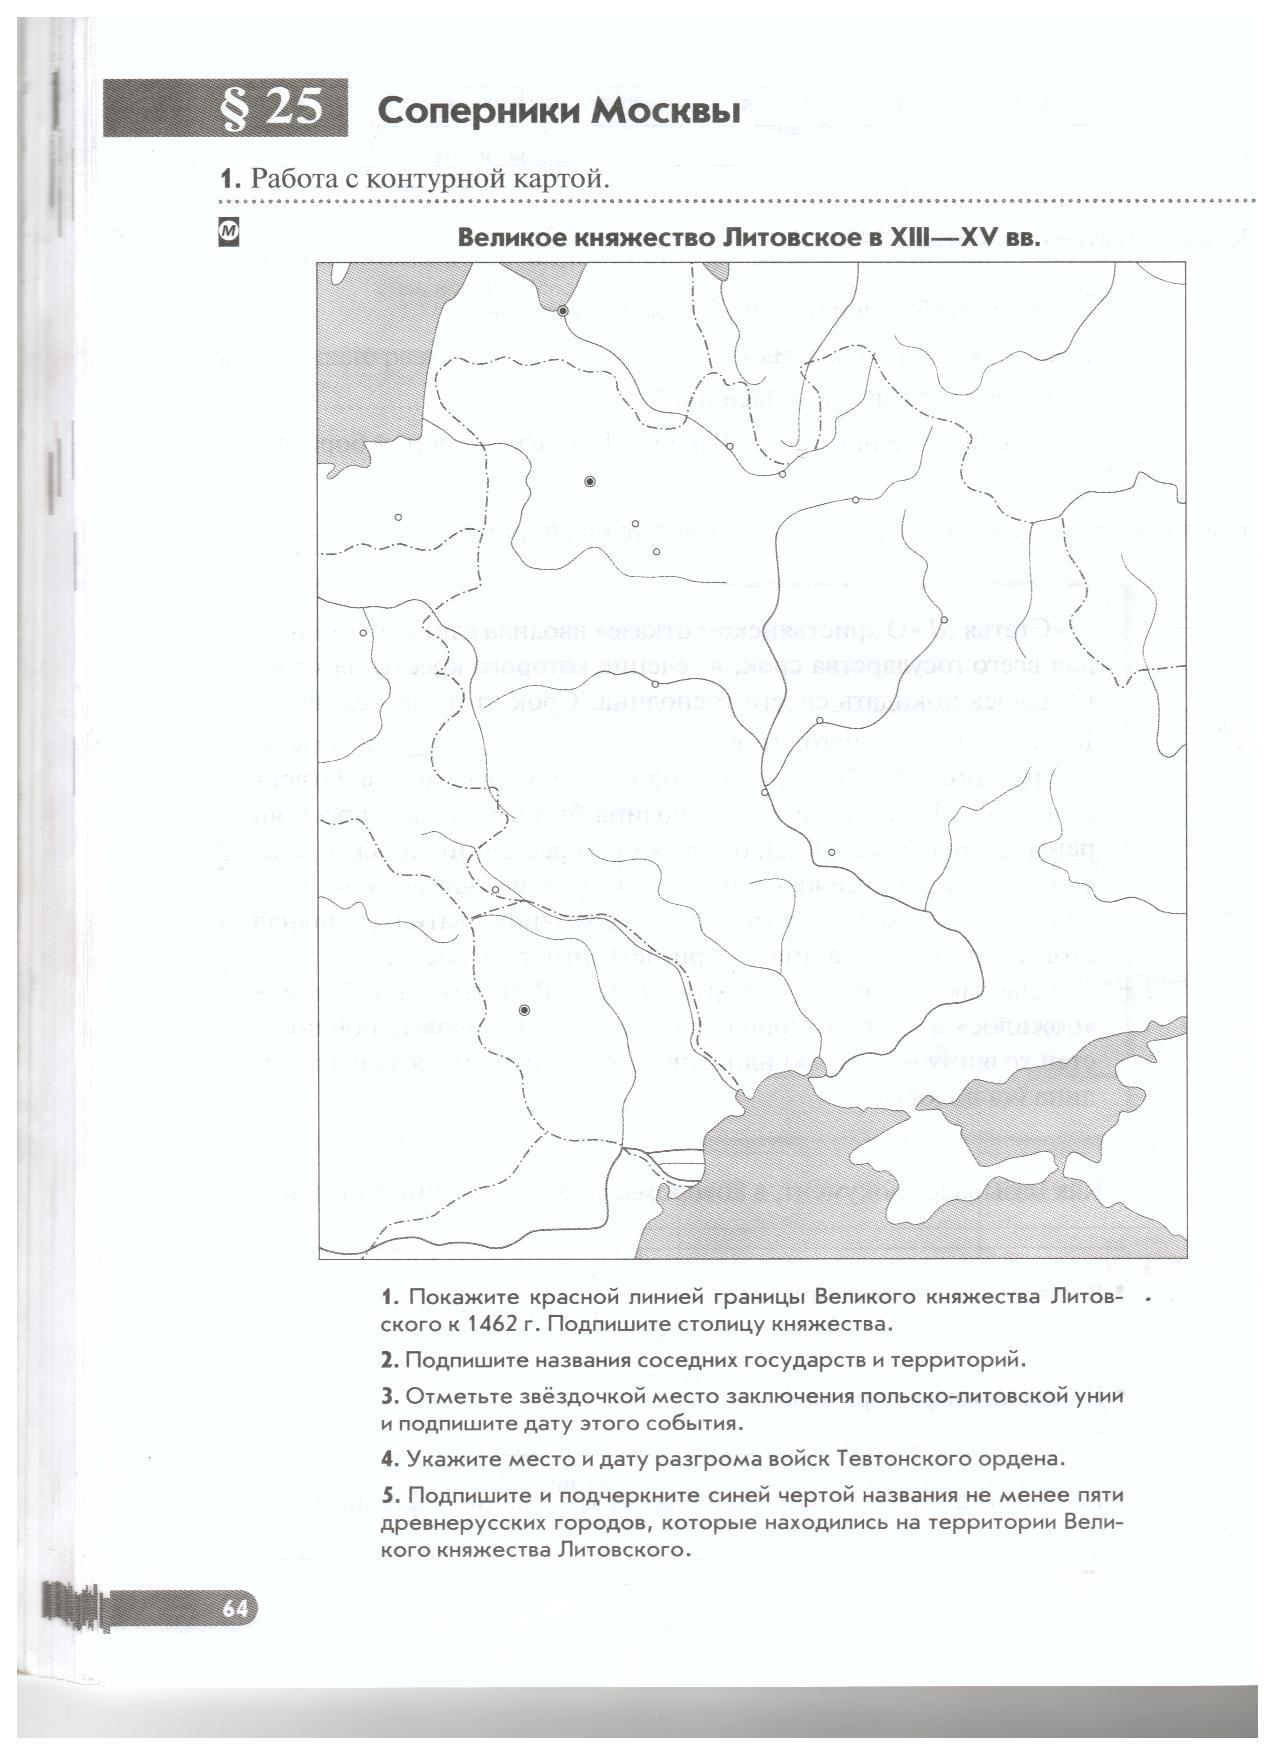 Великое княжество Литовское в 13-15 в контурная карта.